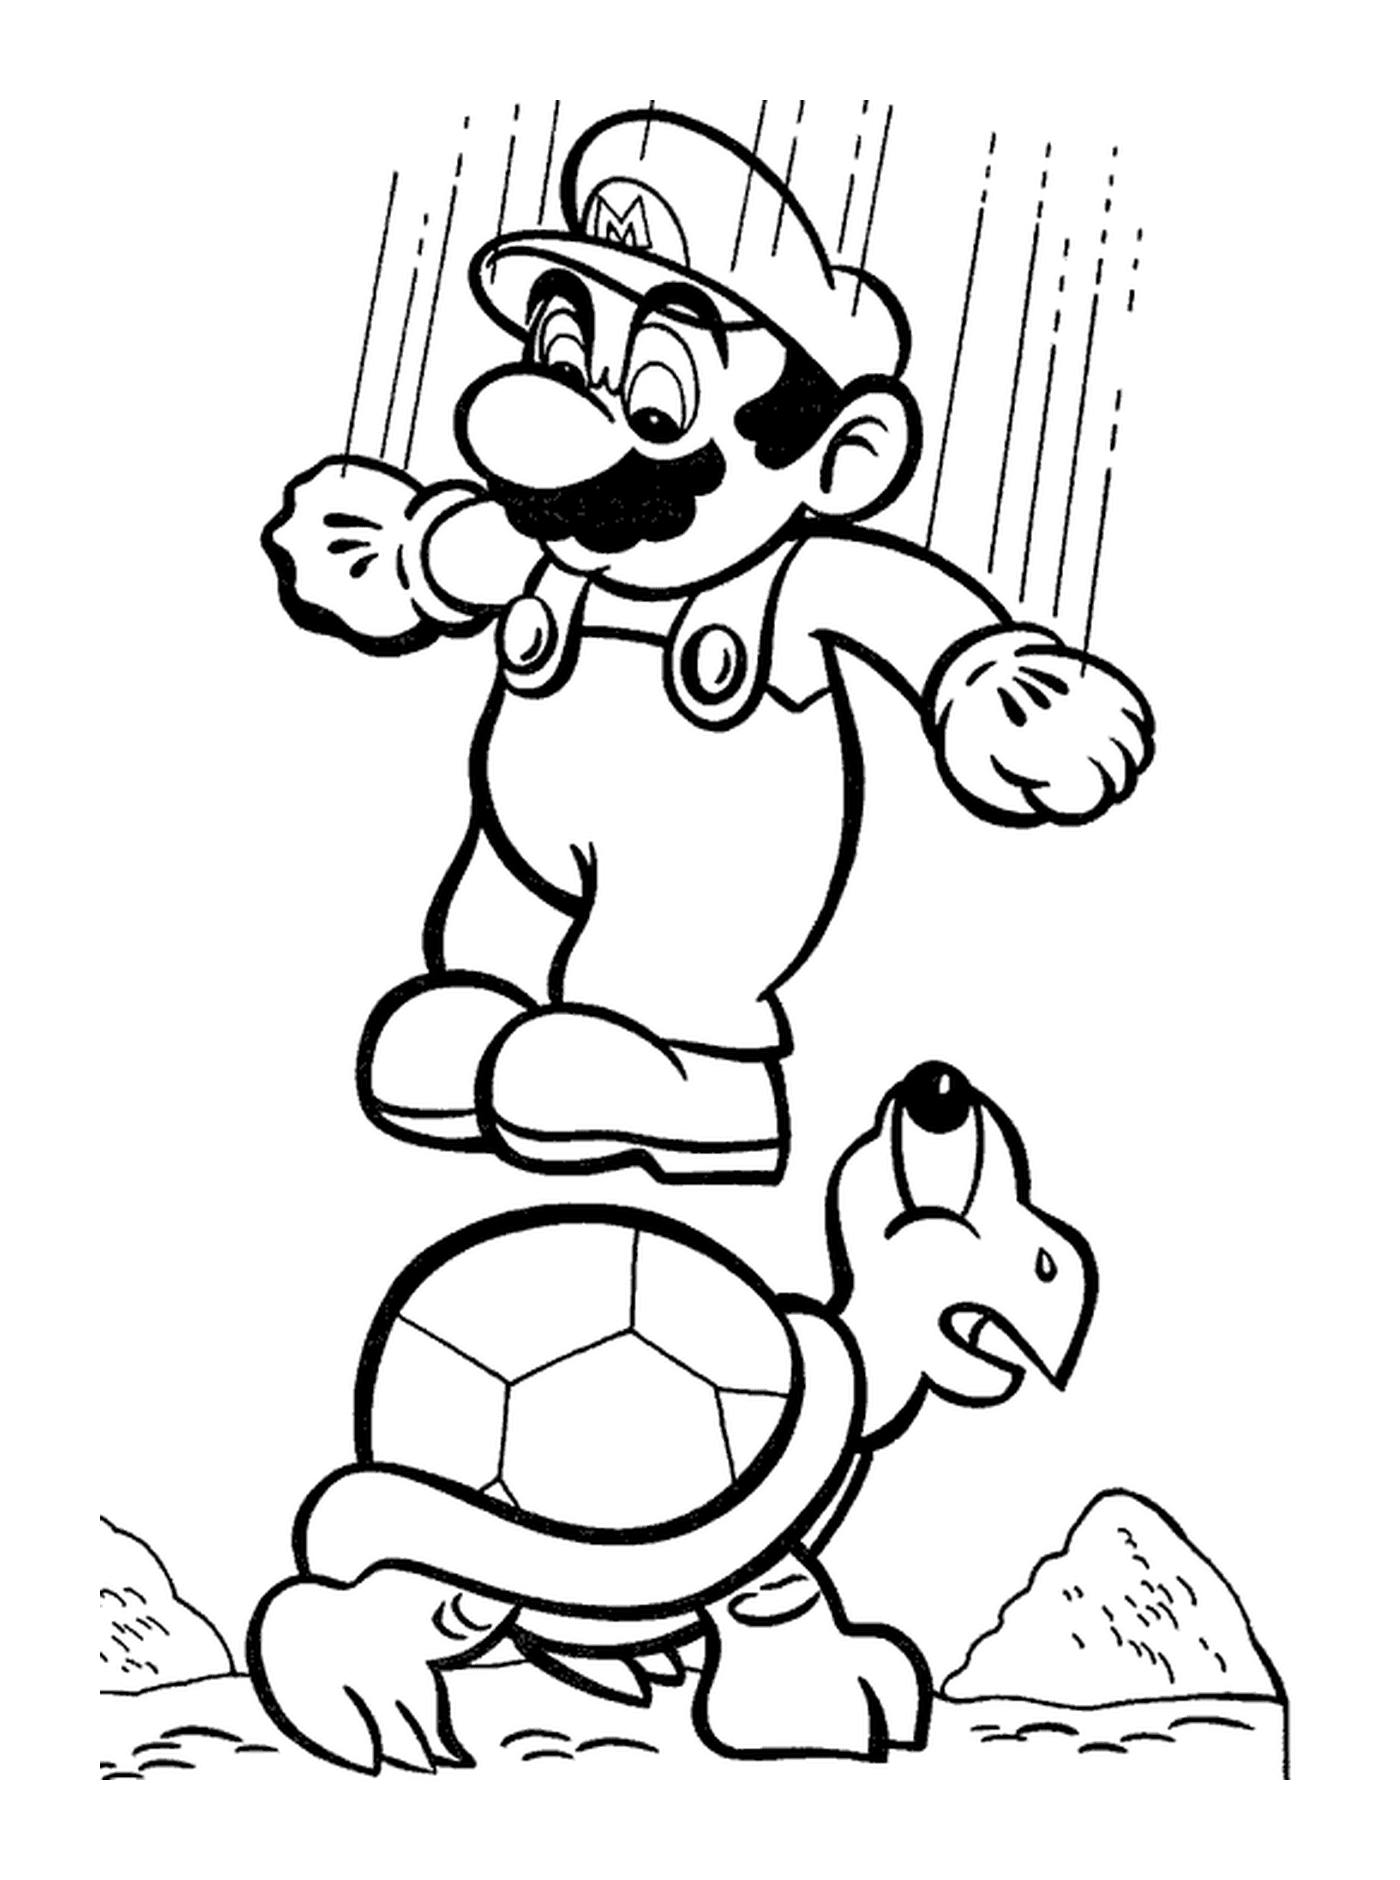   Mario saute sur une tortue en jouant au soccer 